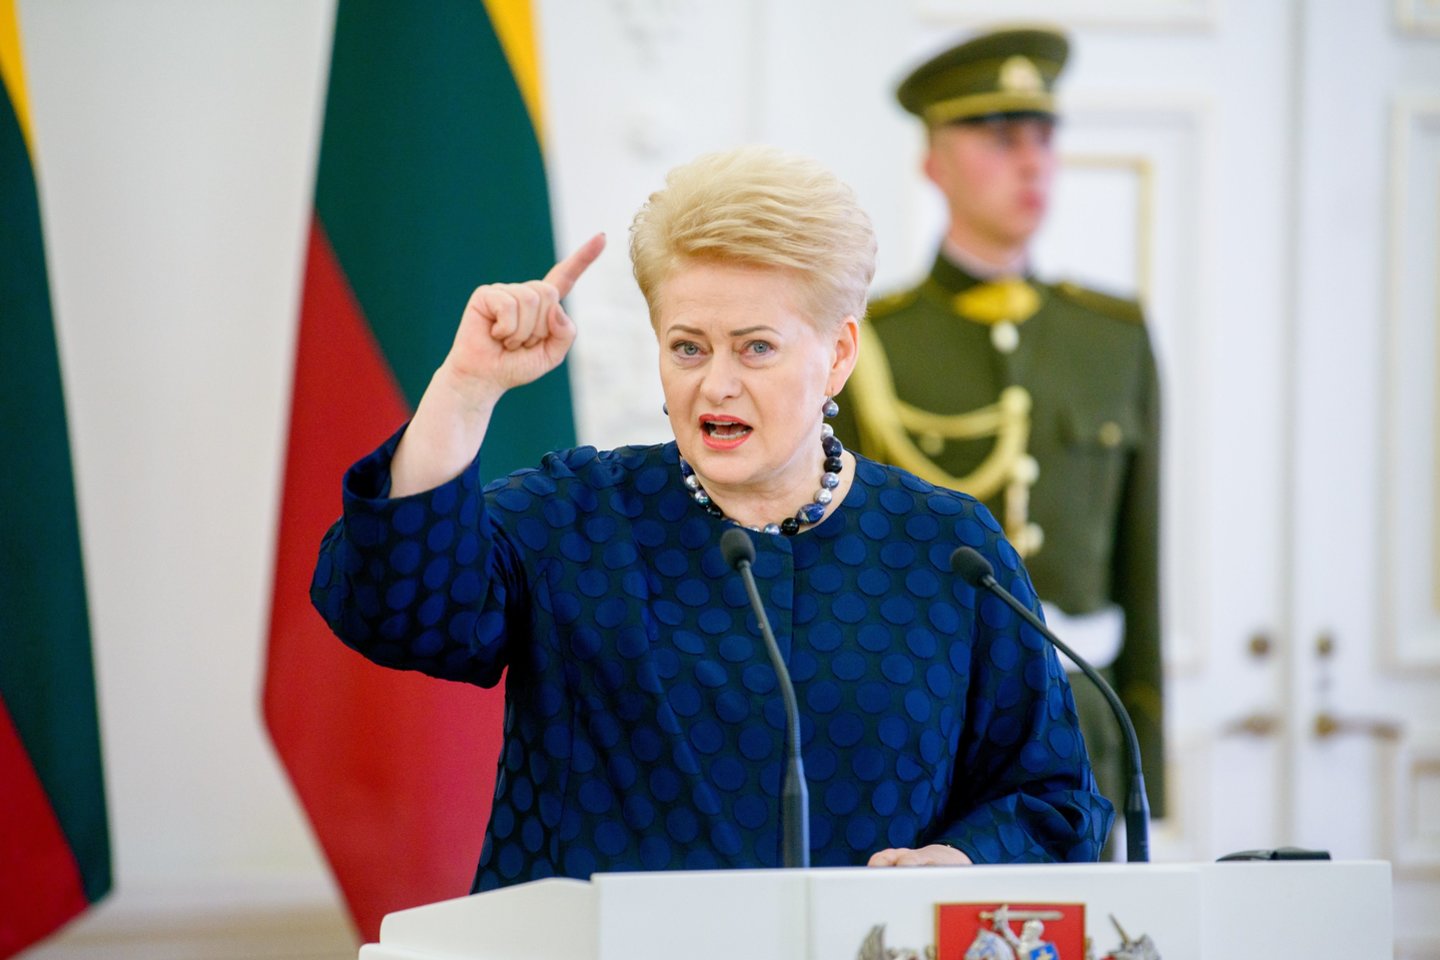  D.Grybauskaitė užsakomaisiais skrydžiais vyksta labai retai.<br> J.Stacevičiaus nuotr. iš archyvo